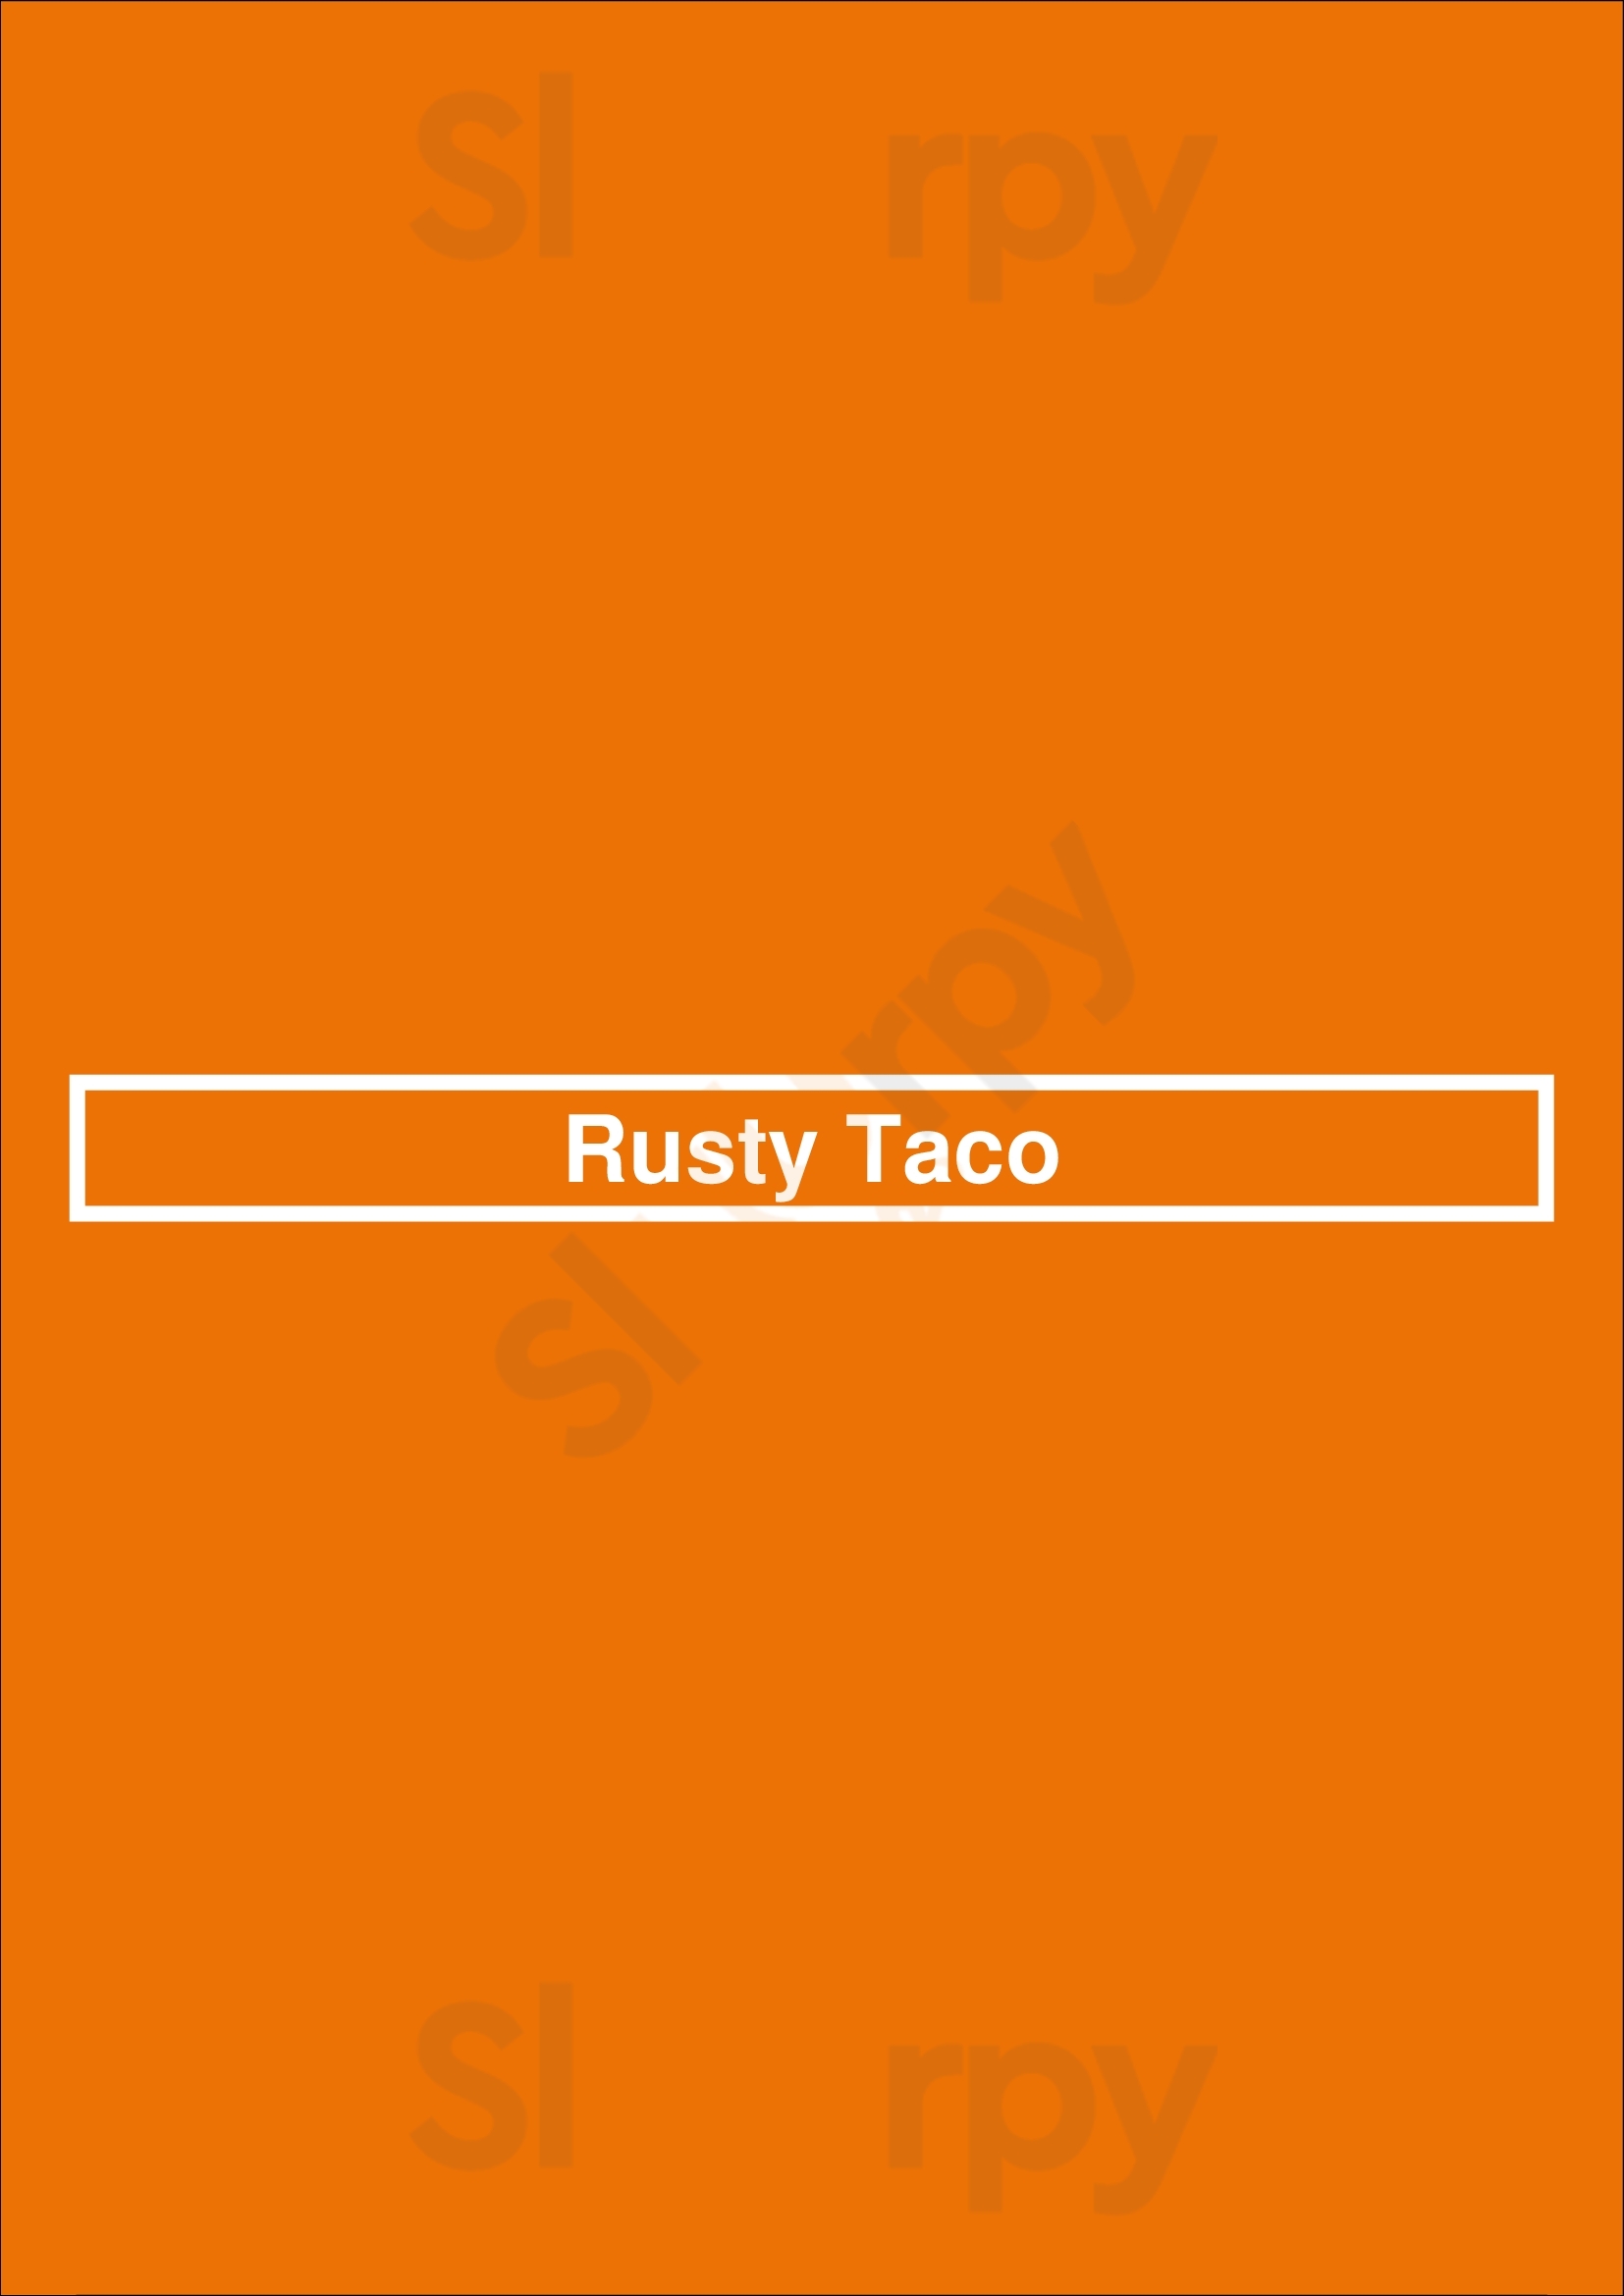 Rusty Taco Dallas Menu - 1